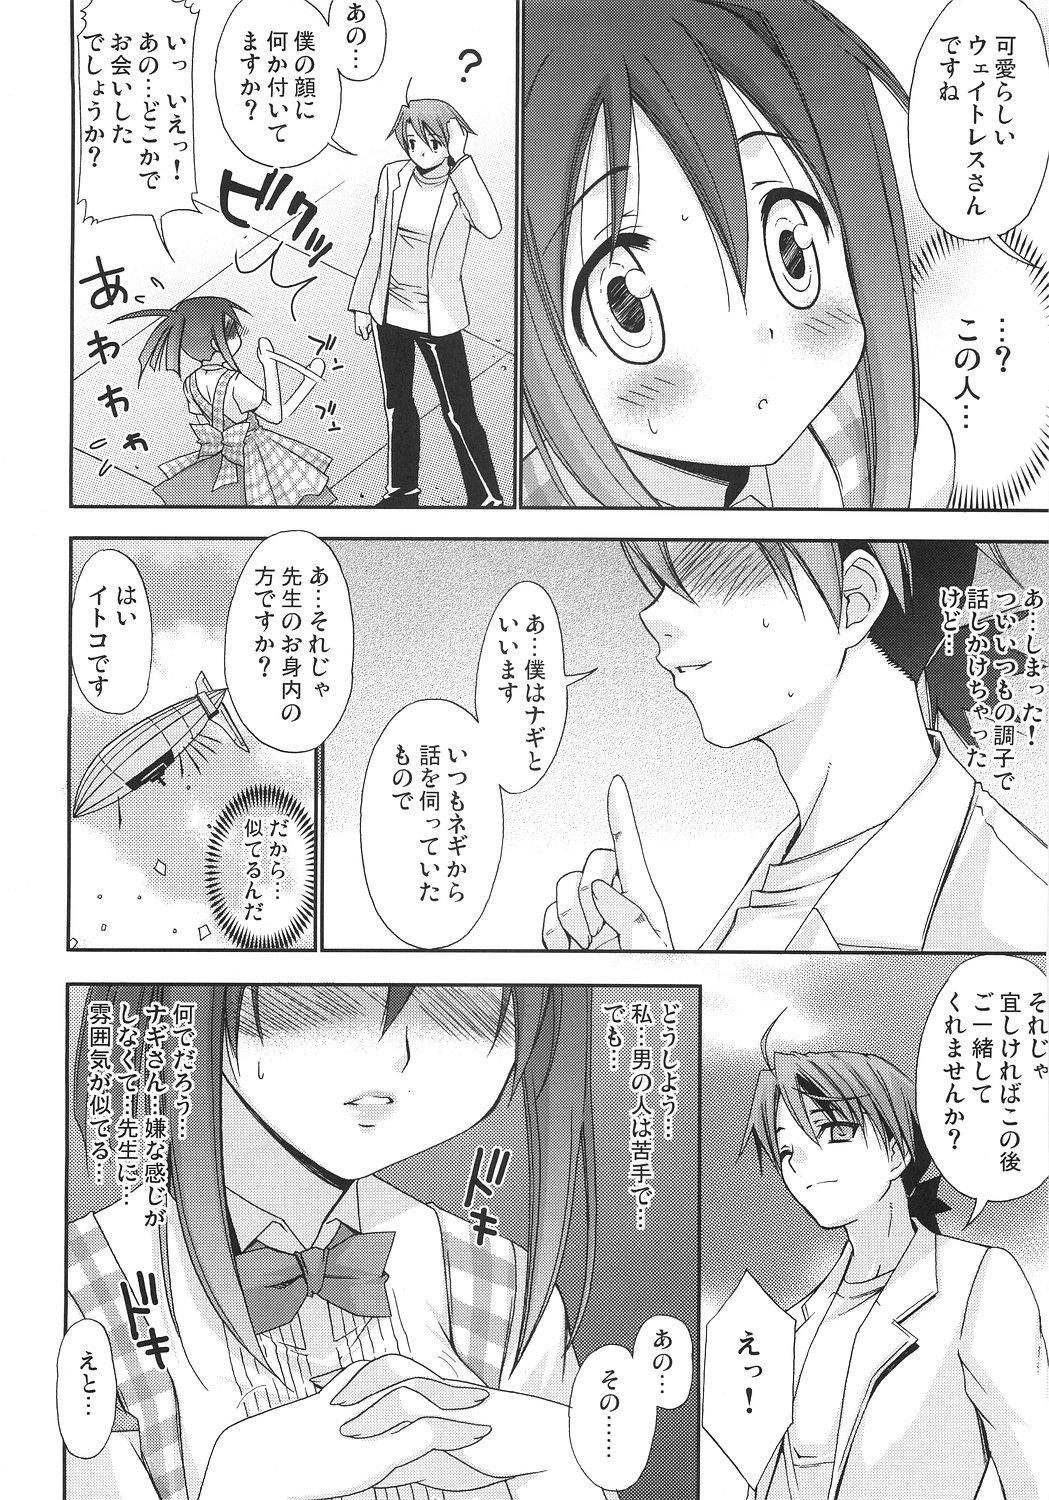 19yo Negi Chari ! 6 - Mahou sensei negima Chileno - Page 3